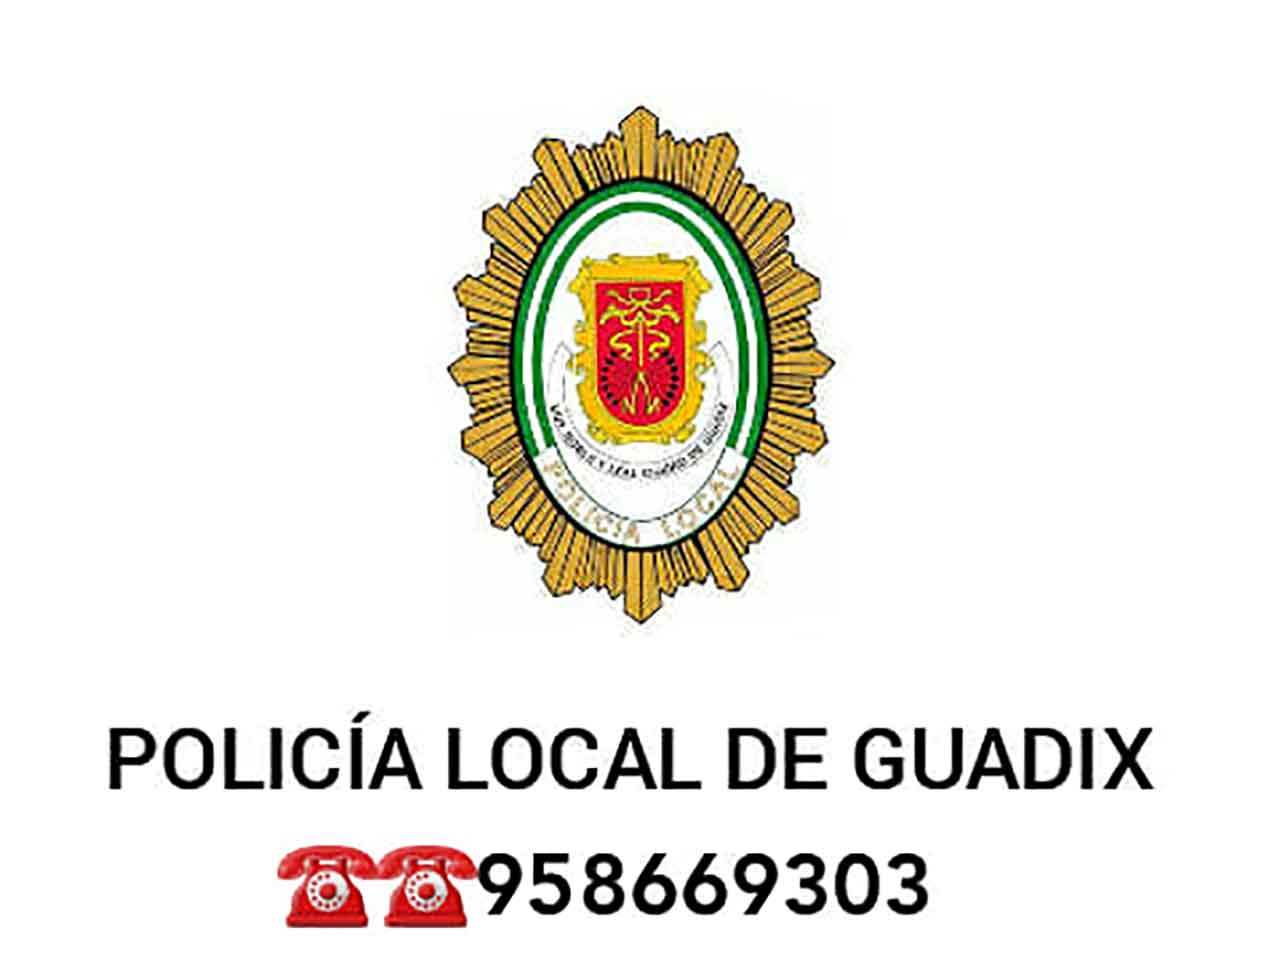 Policía local de Guadix